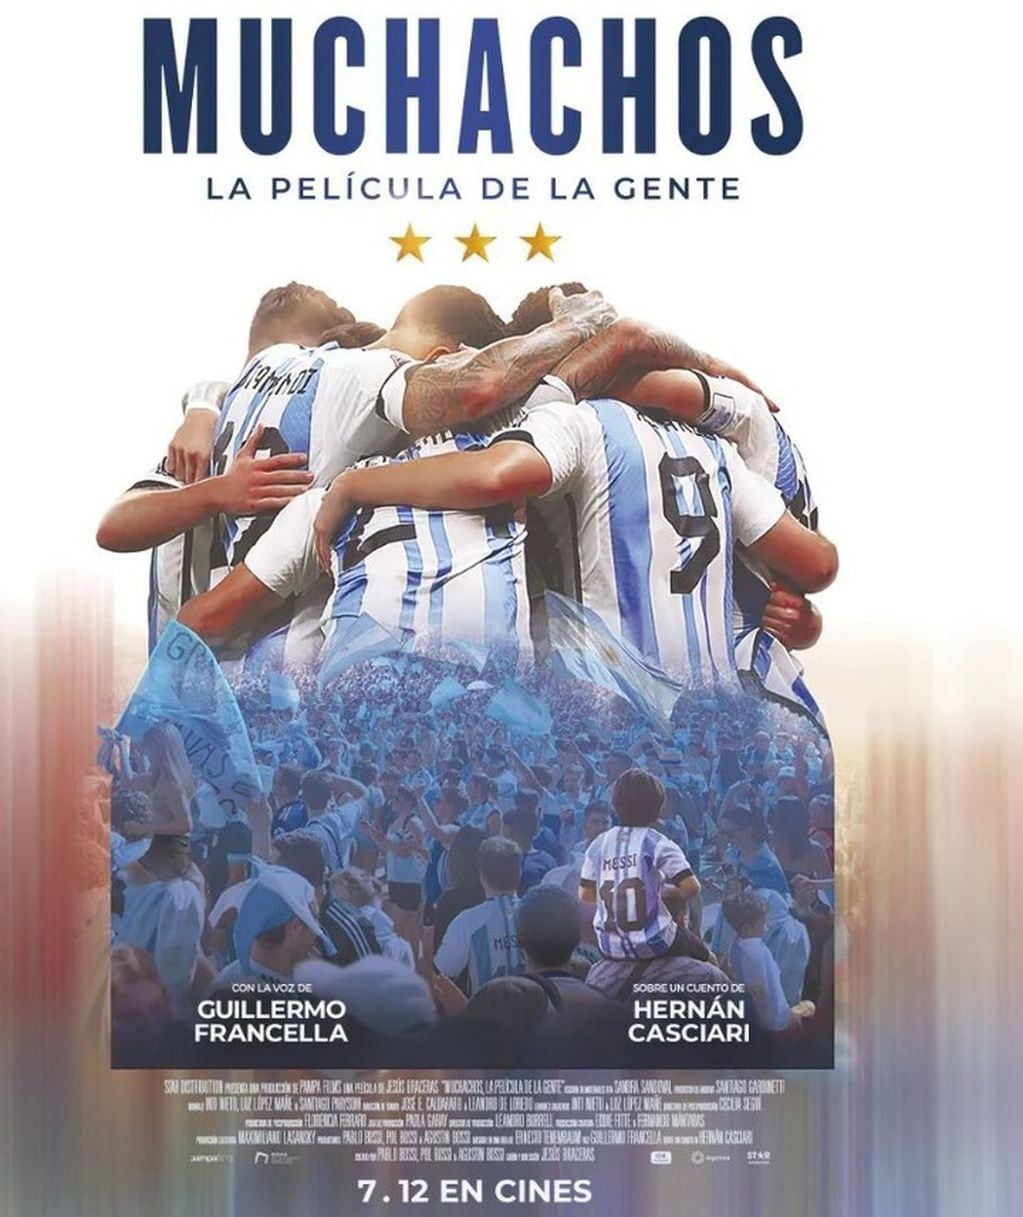 "Muchachos, la película de la gente" copará los cines de toda Argentina. 